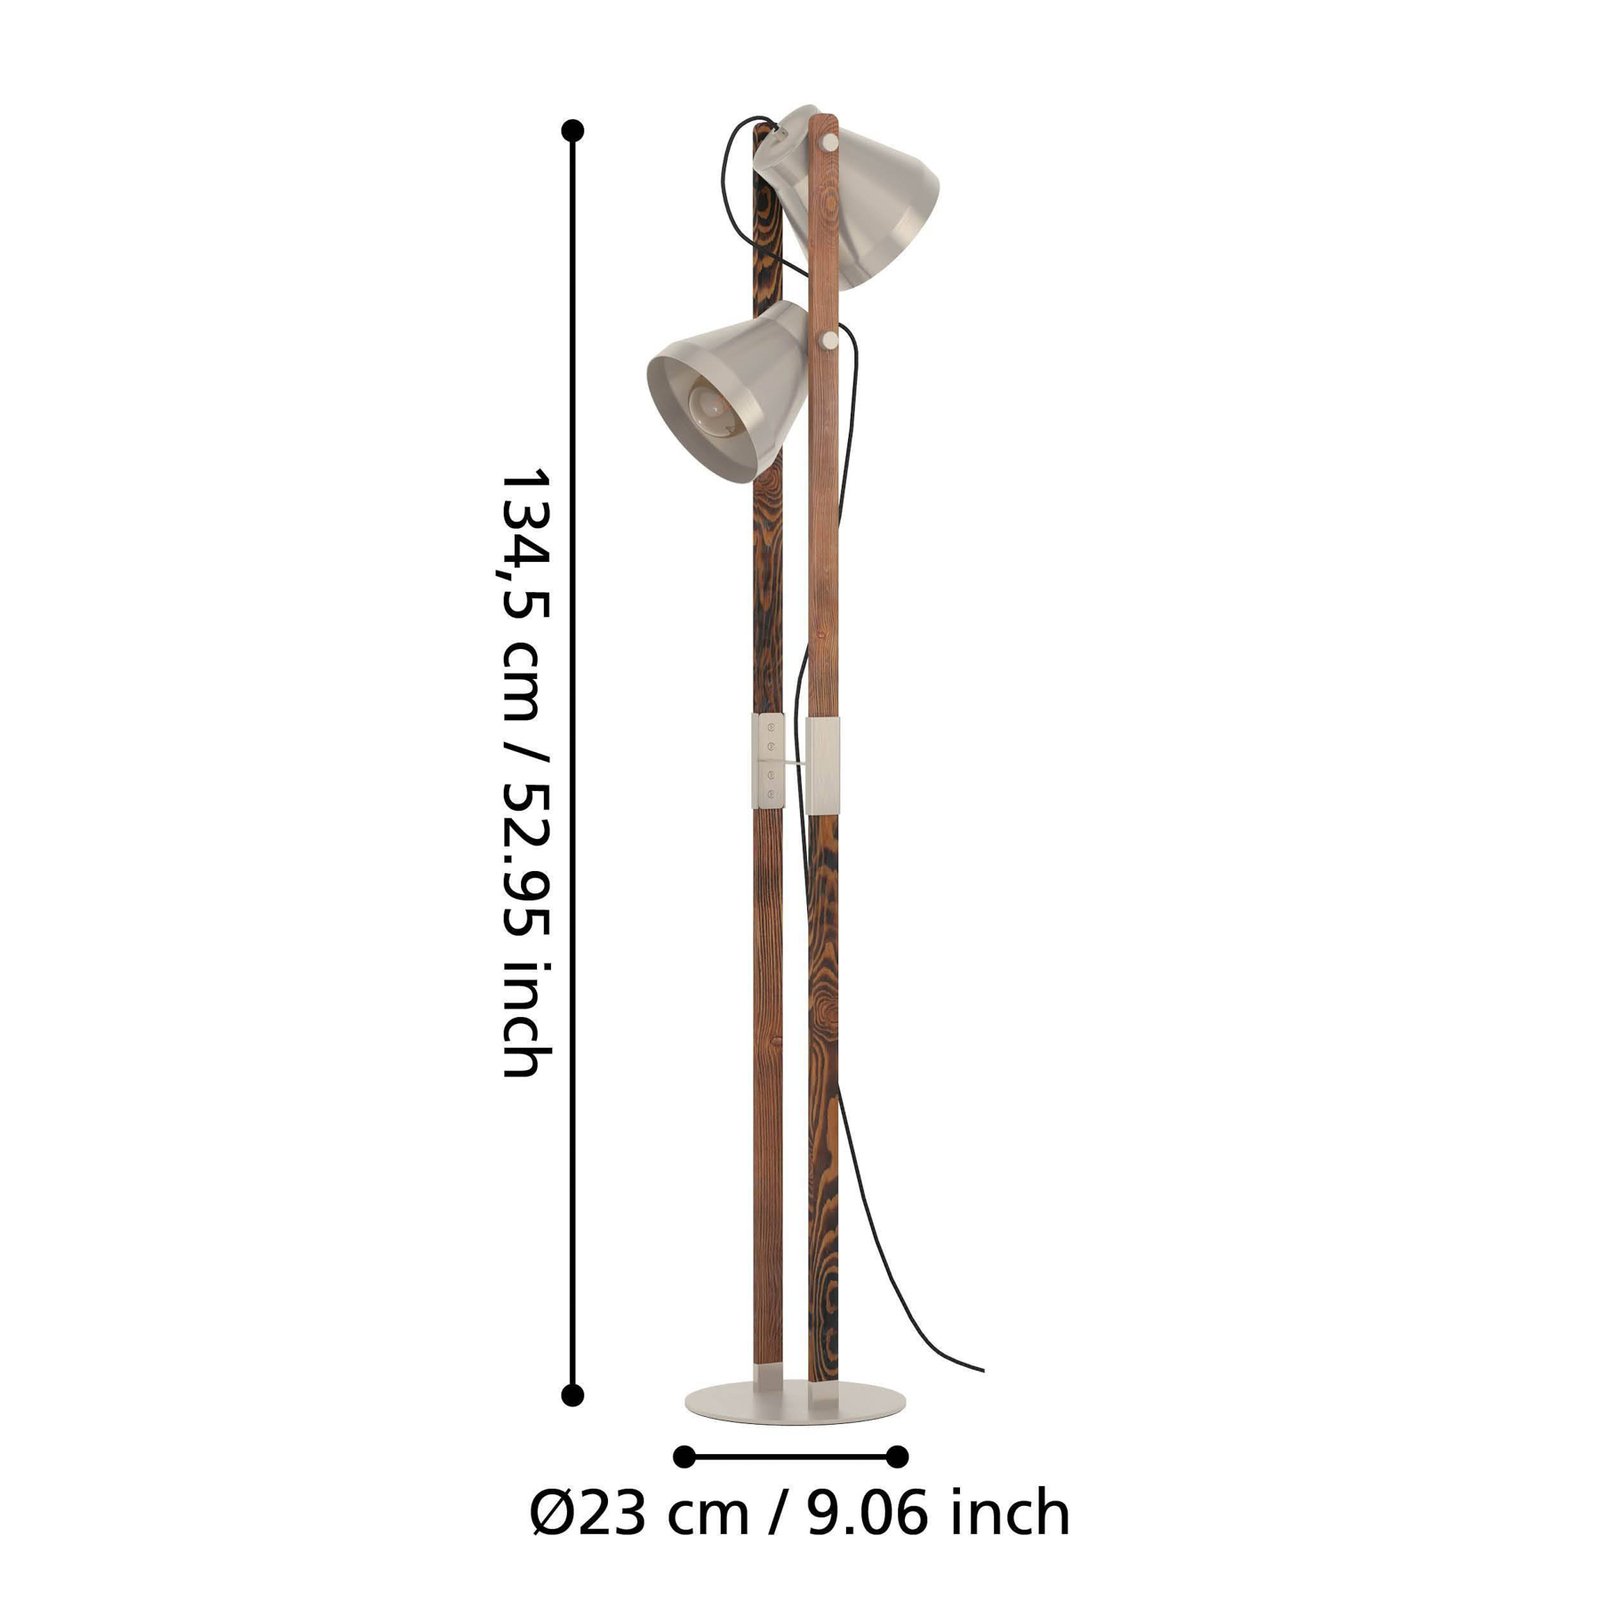 Lampa podłogowa Cawton, wysokość 134,5 cm, stal/brąz, 2-punktowa